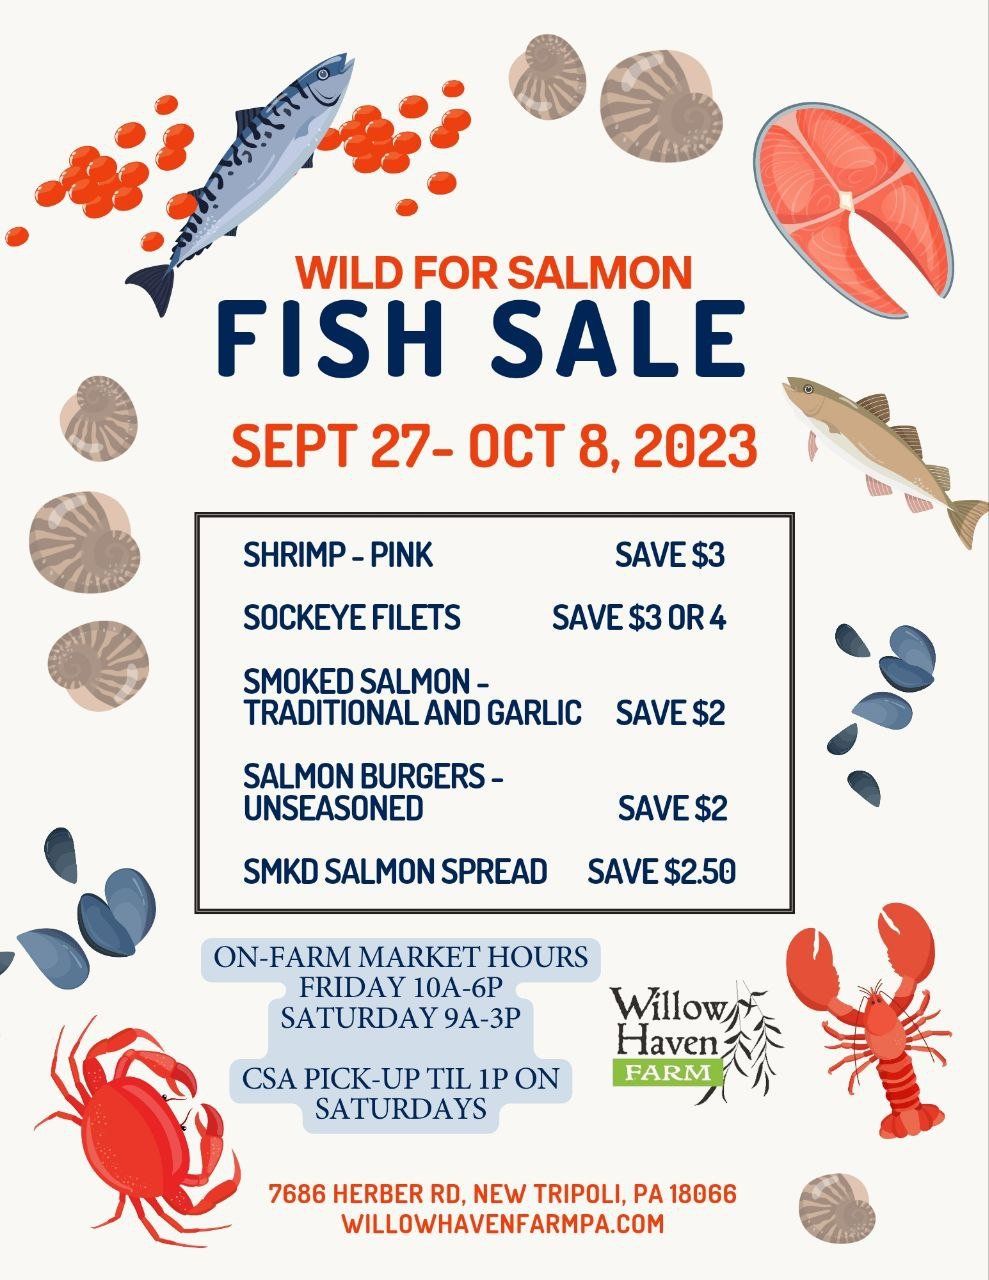 Previous Happening: Wild for Salmon Sale + Enjoy Fall veggies